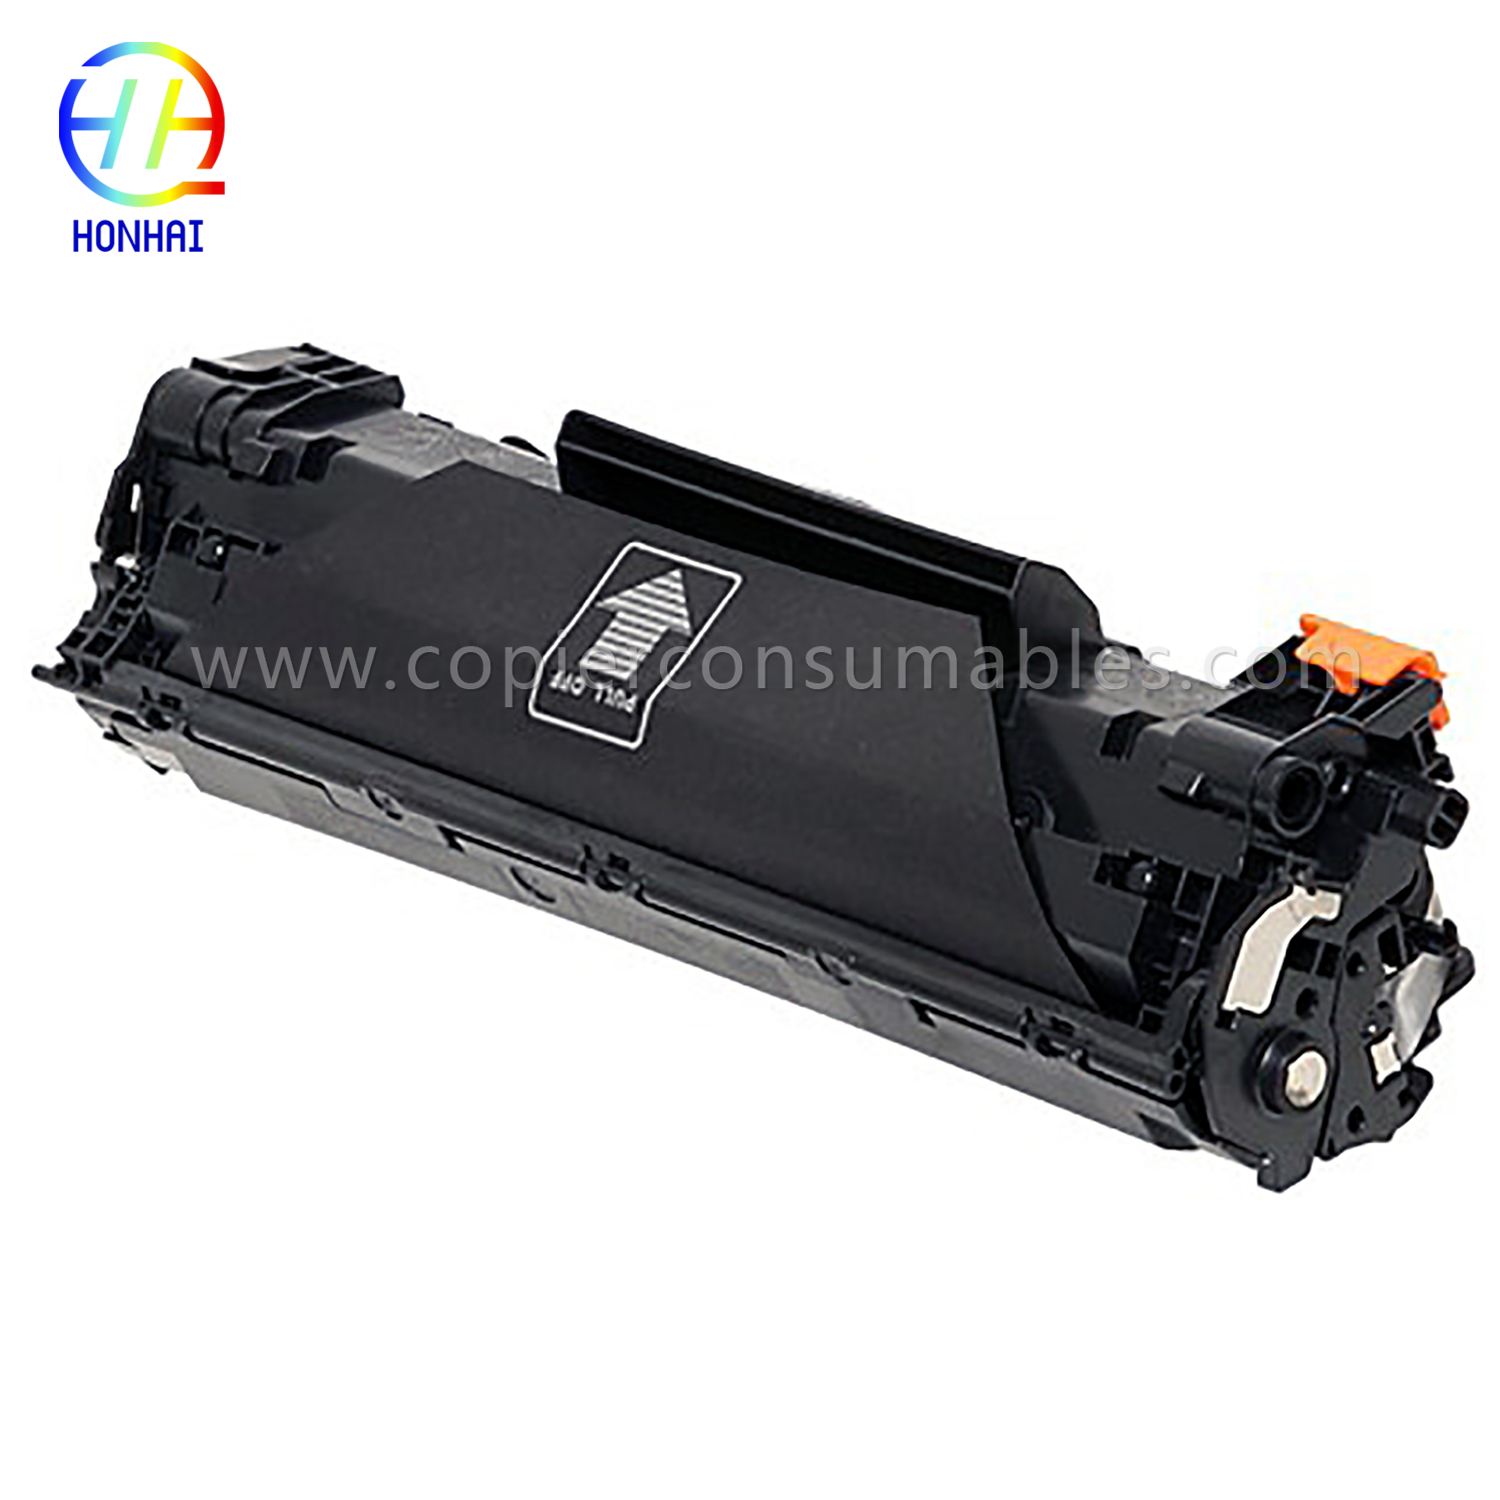 خرطوشة حبر أسود HP LaserJet Pro M1536dnf P1606dn (CE278A) مقاس 13.8x5.1x6.4 بوصة